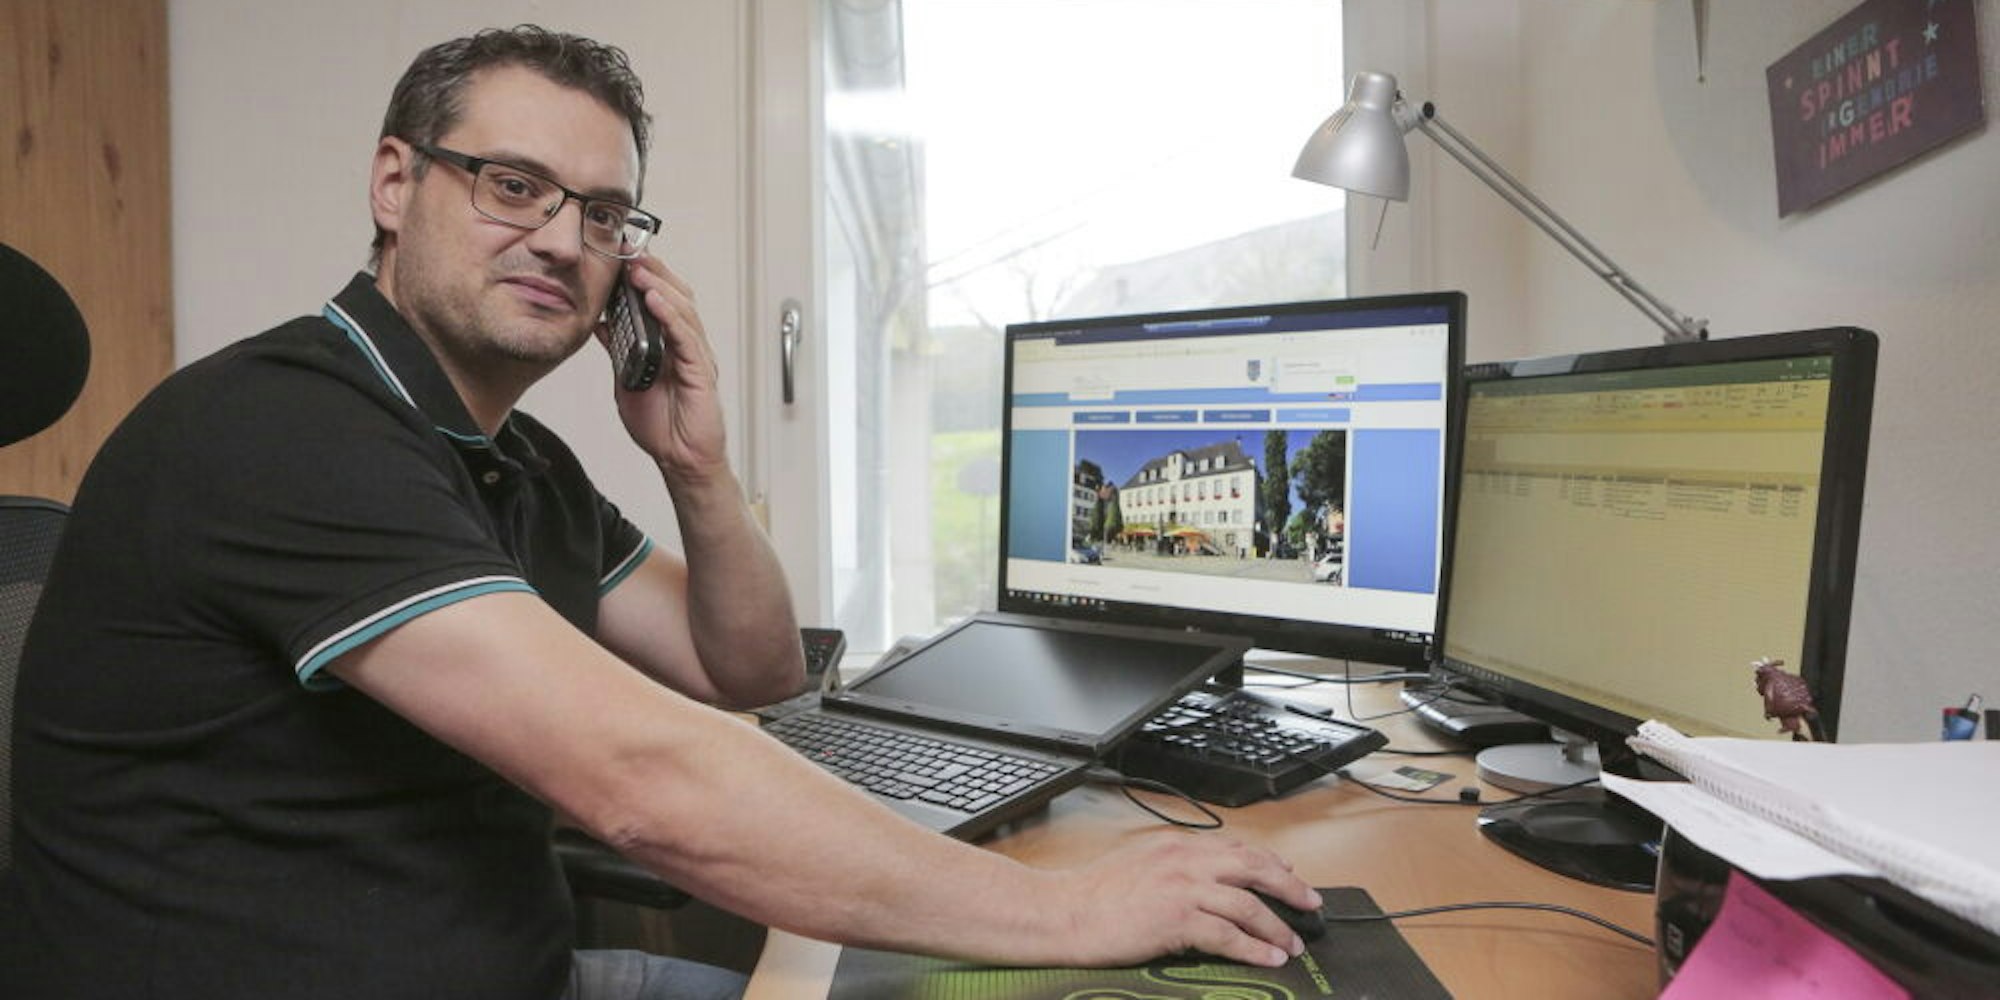 Das Rathaus ist einer der größten Arbeitgeber in Wipperfürth. Die Aufgaben sind vielfältig. Zum Beispiel als Sachbearbeiter im Homeoffice, wie hier Thorsten Stefer.